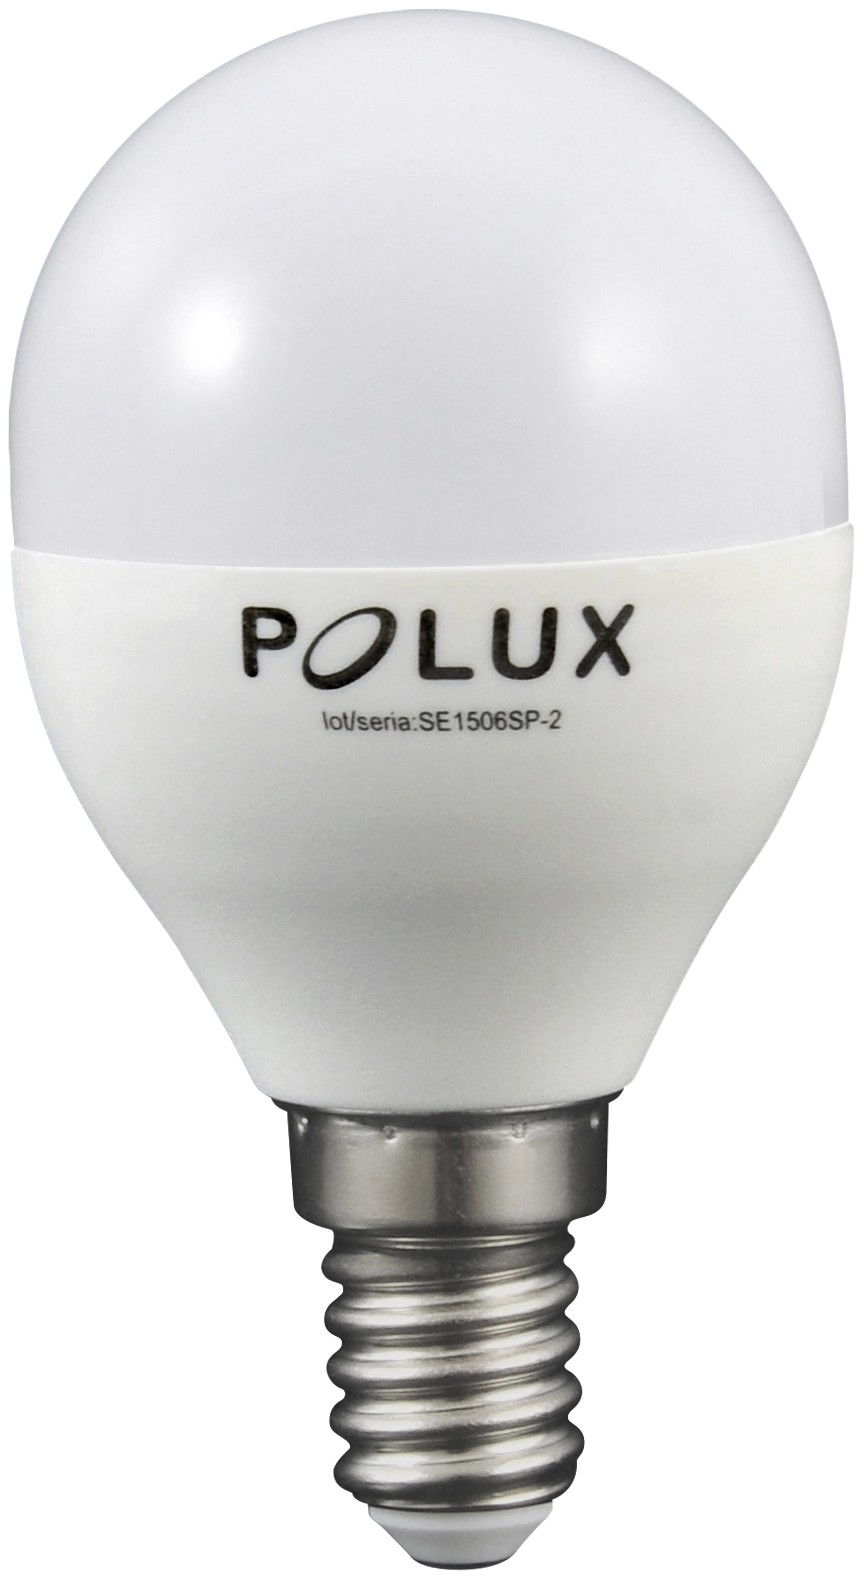 Polux Żarówka LED 6,5W gwint E14 560lm neutralna barwa światła 312136 SANICO 312136